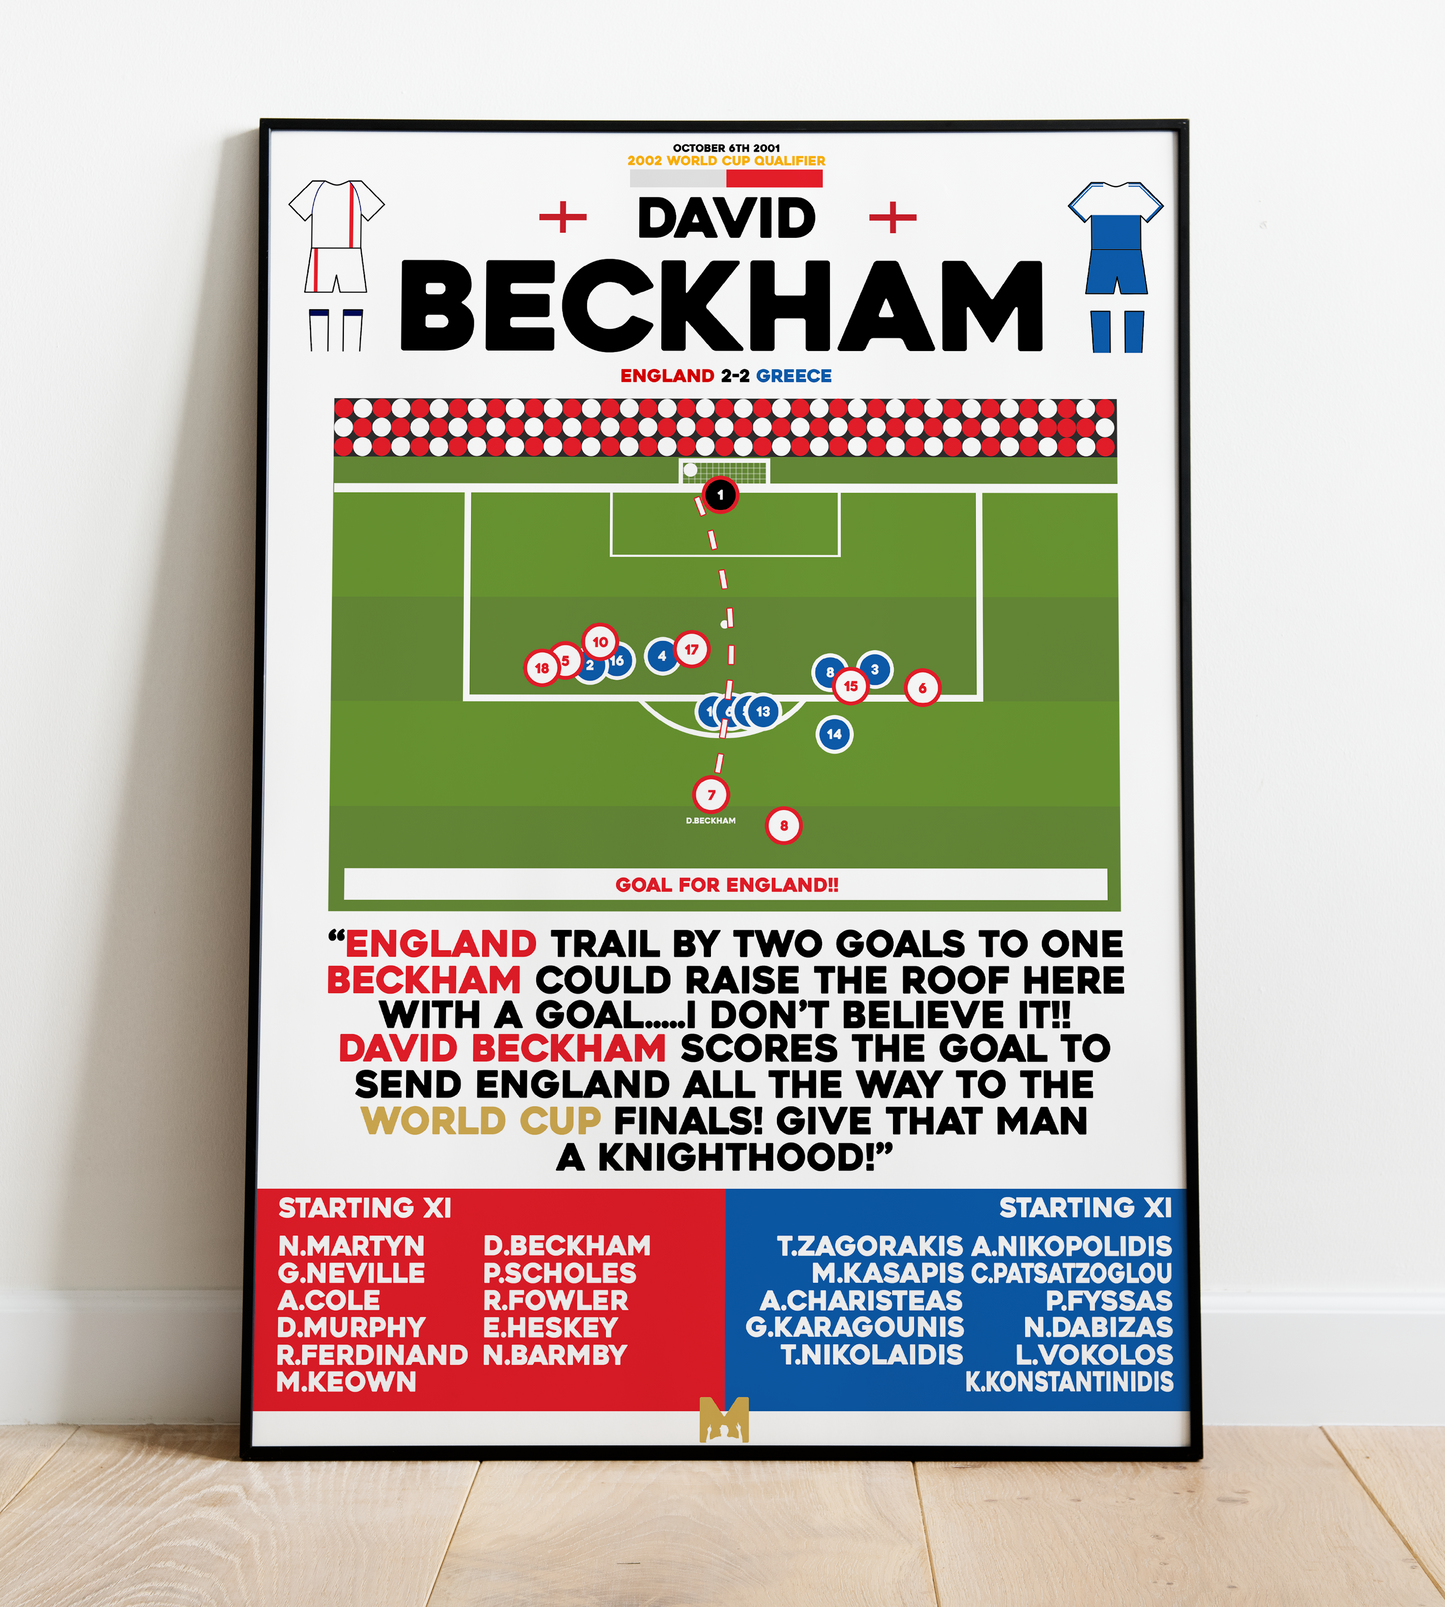 David Beckham Goal vs Greece - World Cup 2002 Qualifiers - England